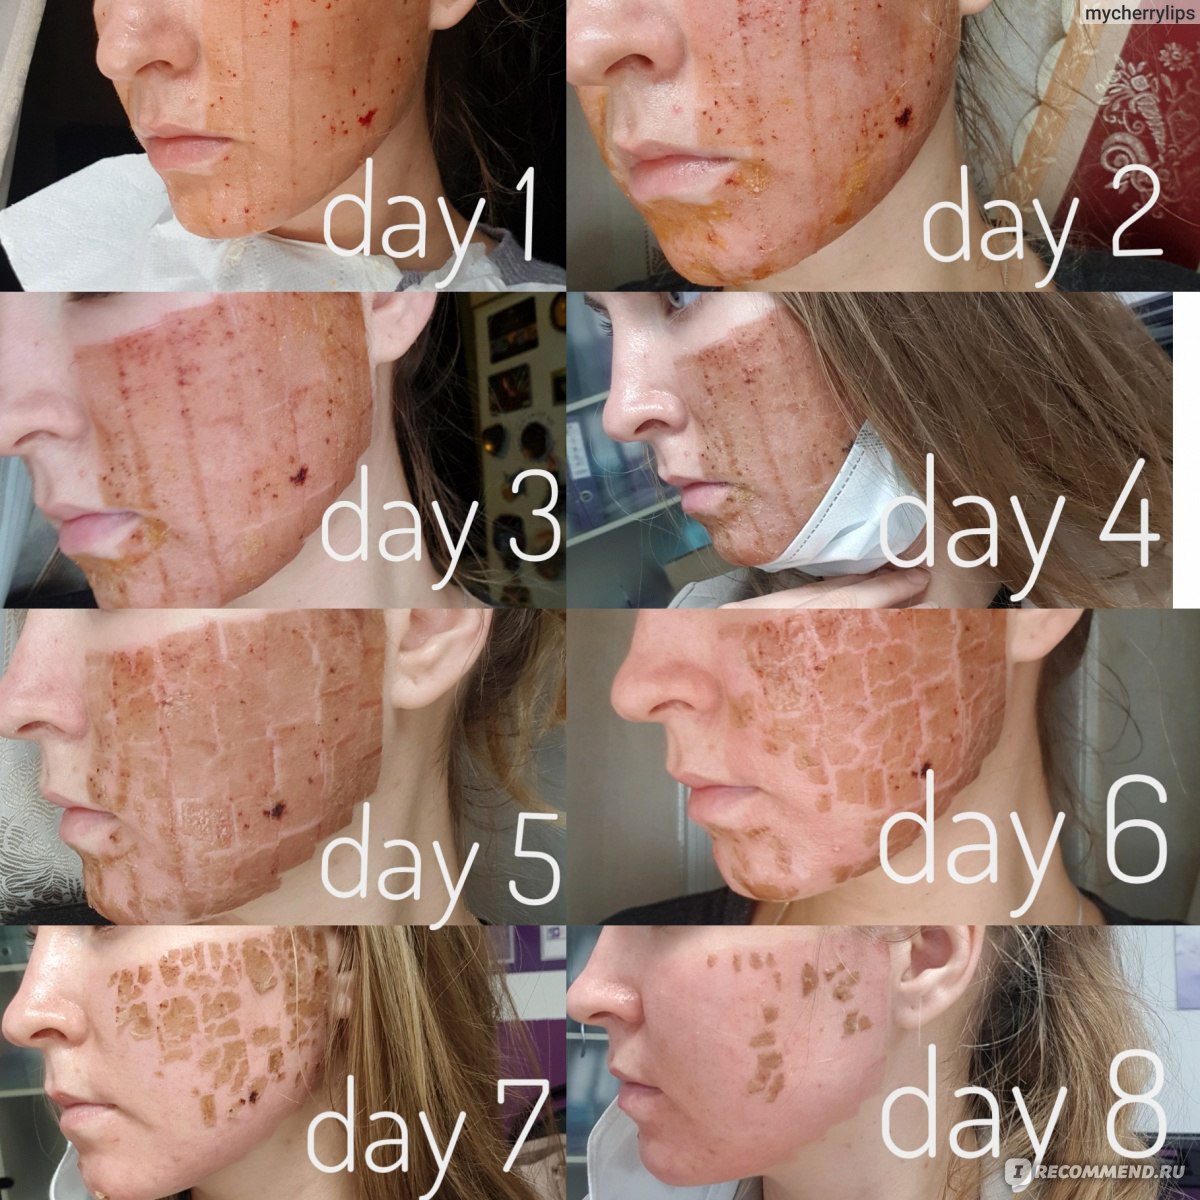 Лазерная шлифовка лица: стоимость, отзывы, фото до и после